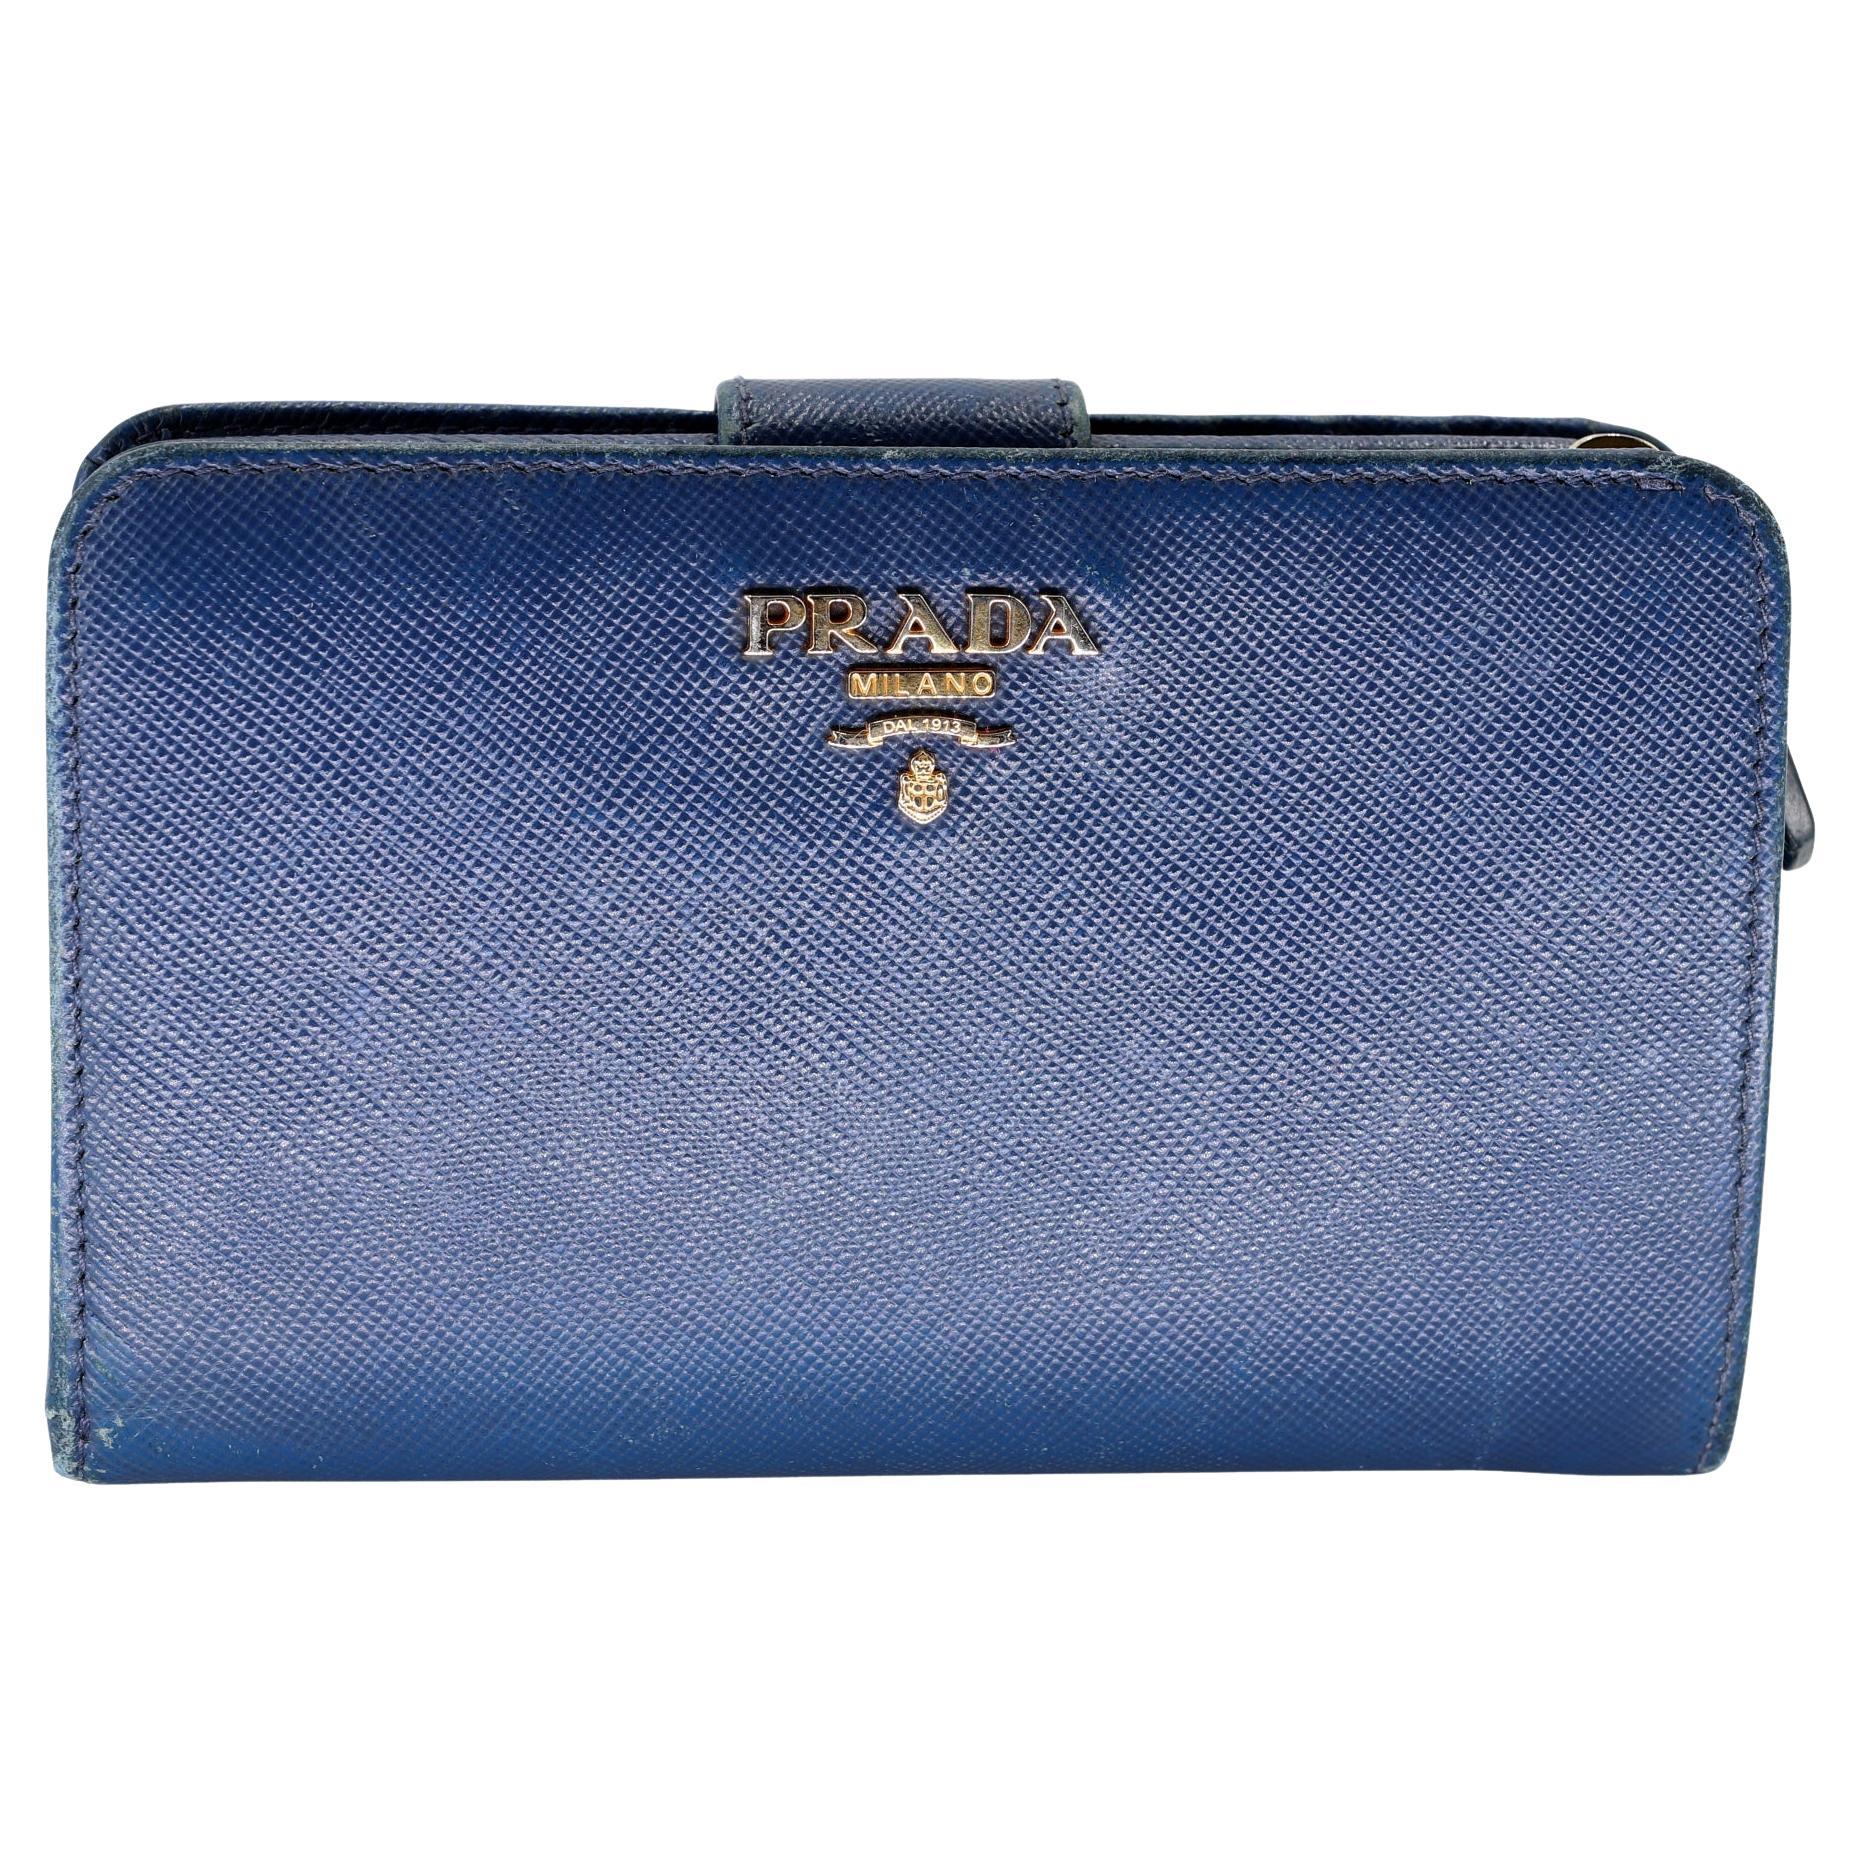 Re-sell Your Prada Handbags Online | Rebag